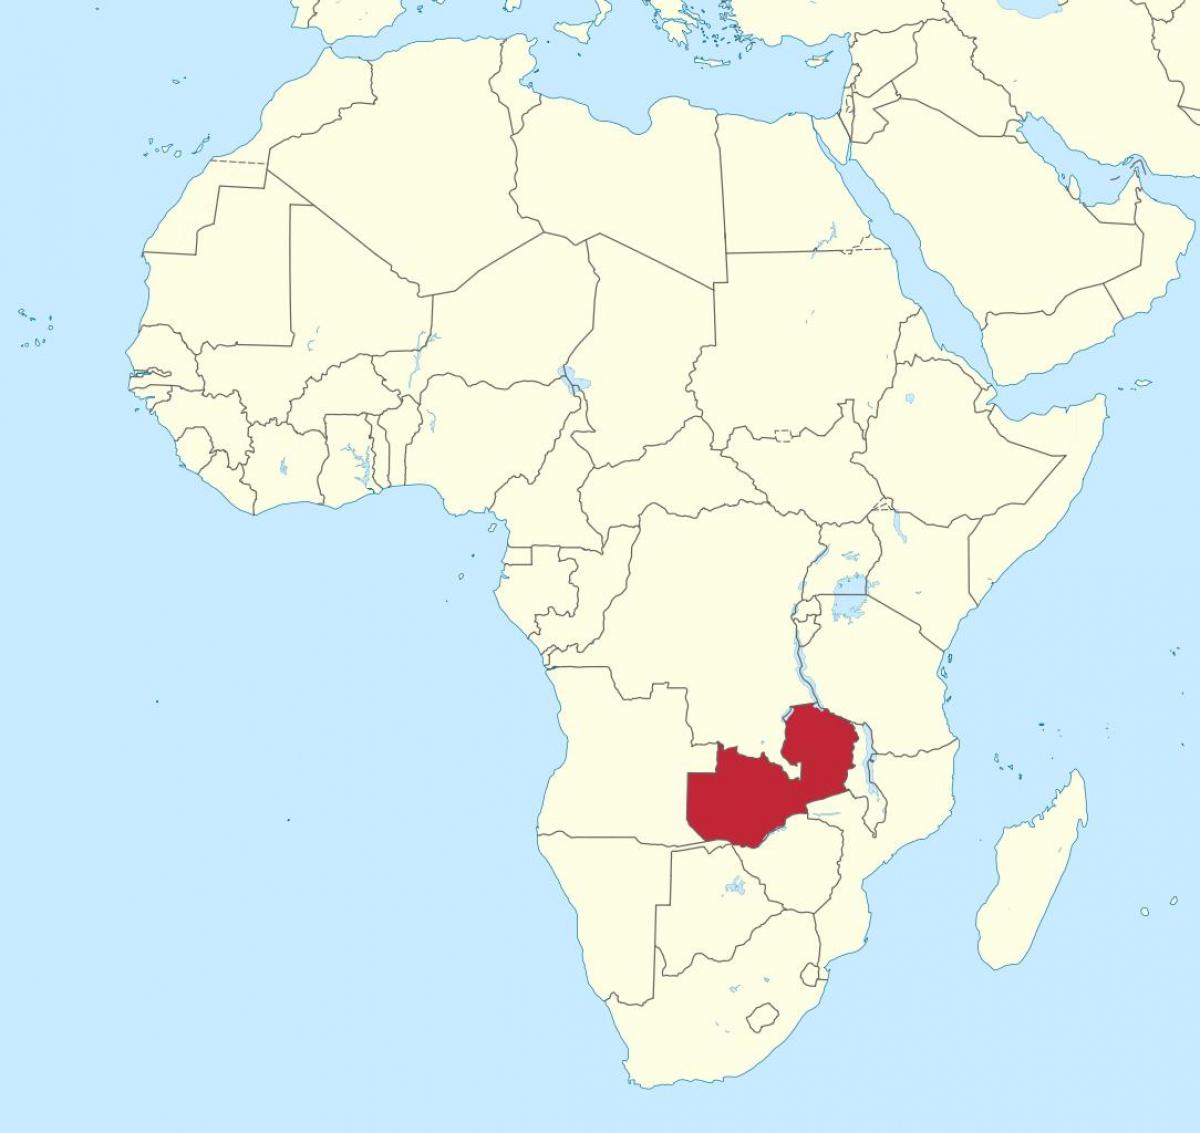 peta dari afrika menunjukkan Zambia